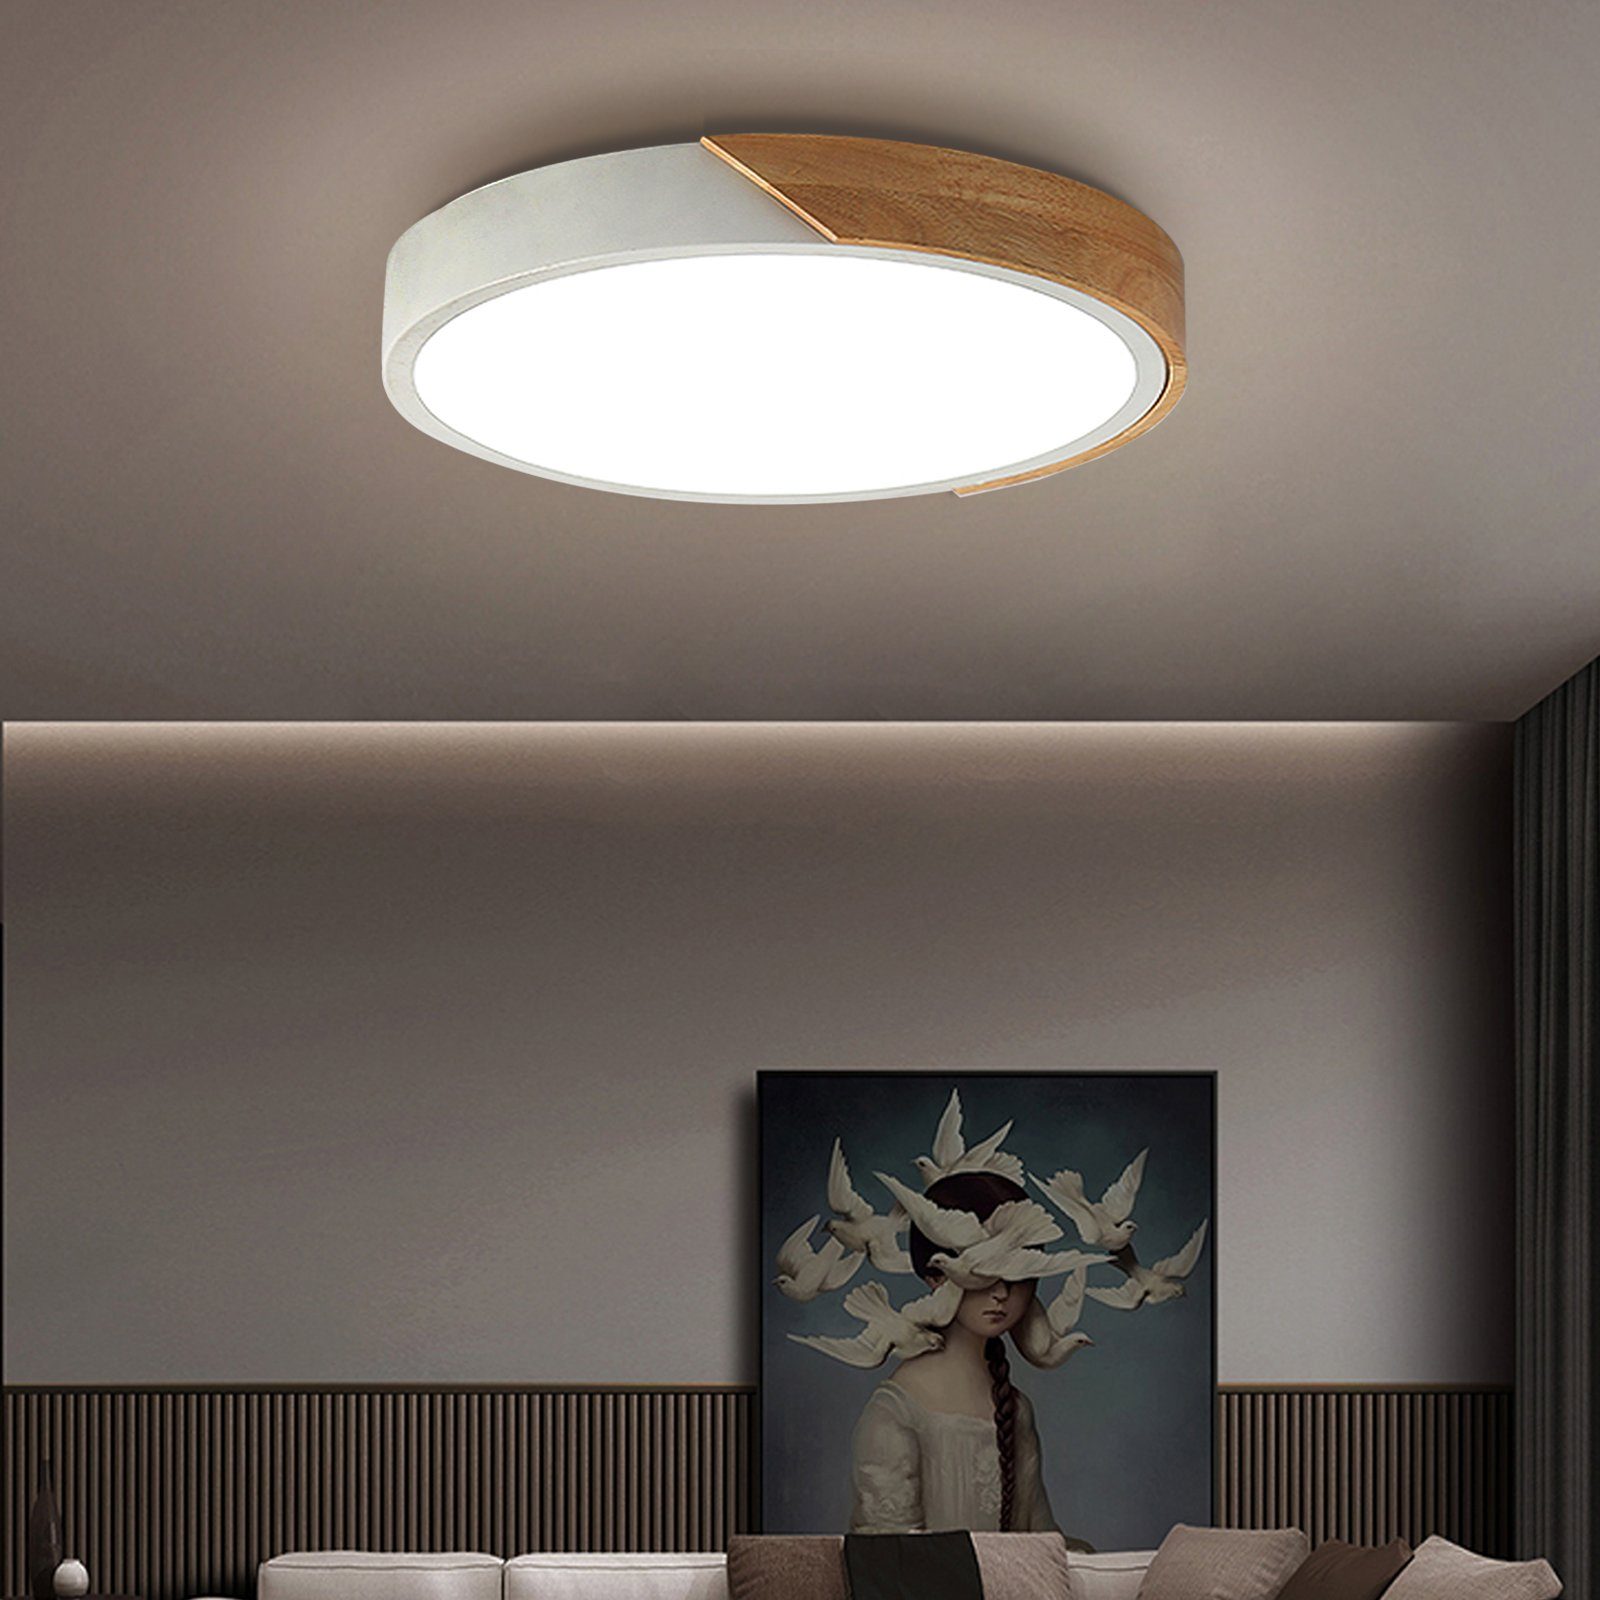 36W LED Deckenleuchte Ultraflach Panel Deckenlampe Wohnzimmer Dimmbar Lampe IP54 